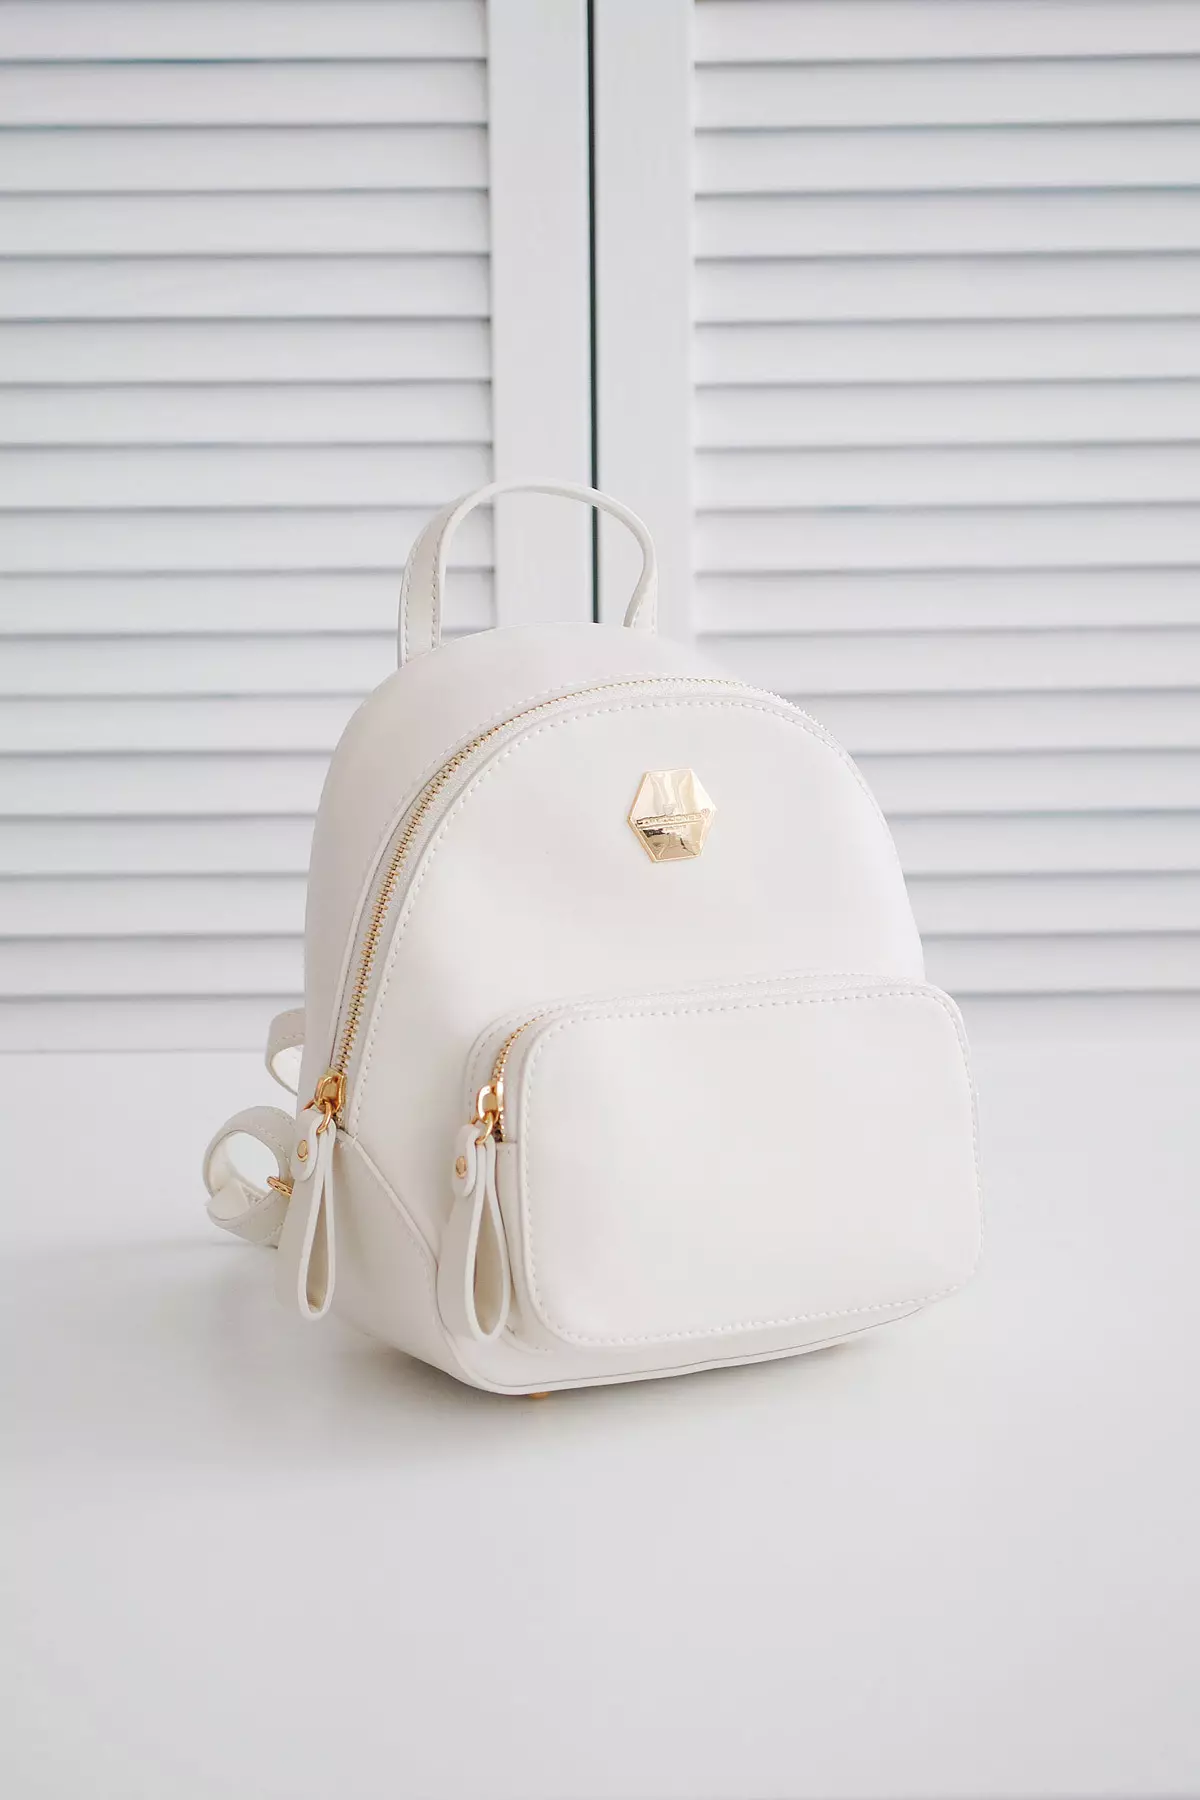 Backpacks bardhë: Çfarë duhet të veshin backpacks pak dhe të mëdha të bardha të grave? Çanta të bukura të shpinës për vajzat dhe modele të tjera me stil 2549_12